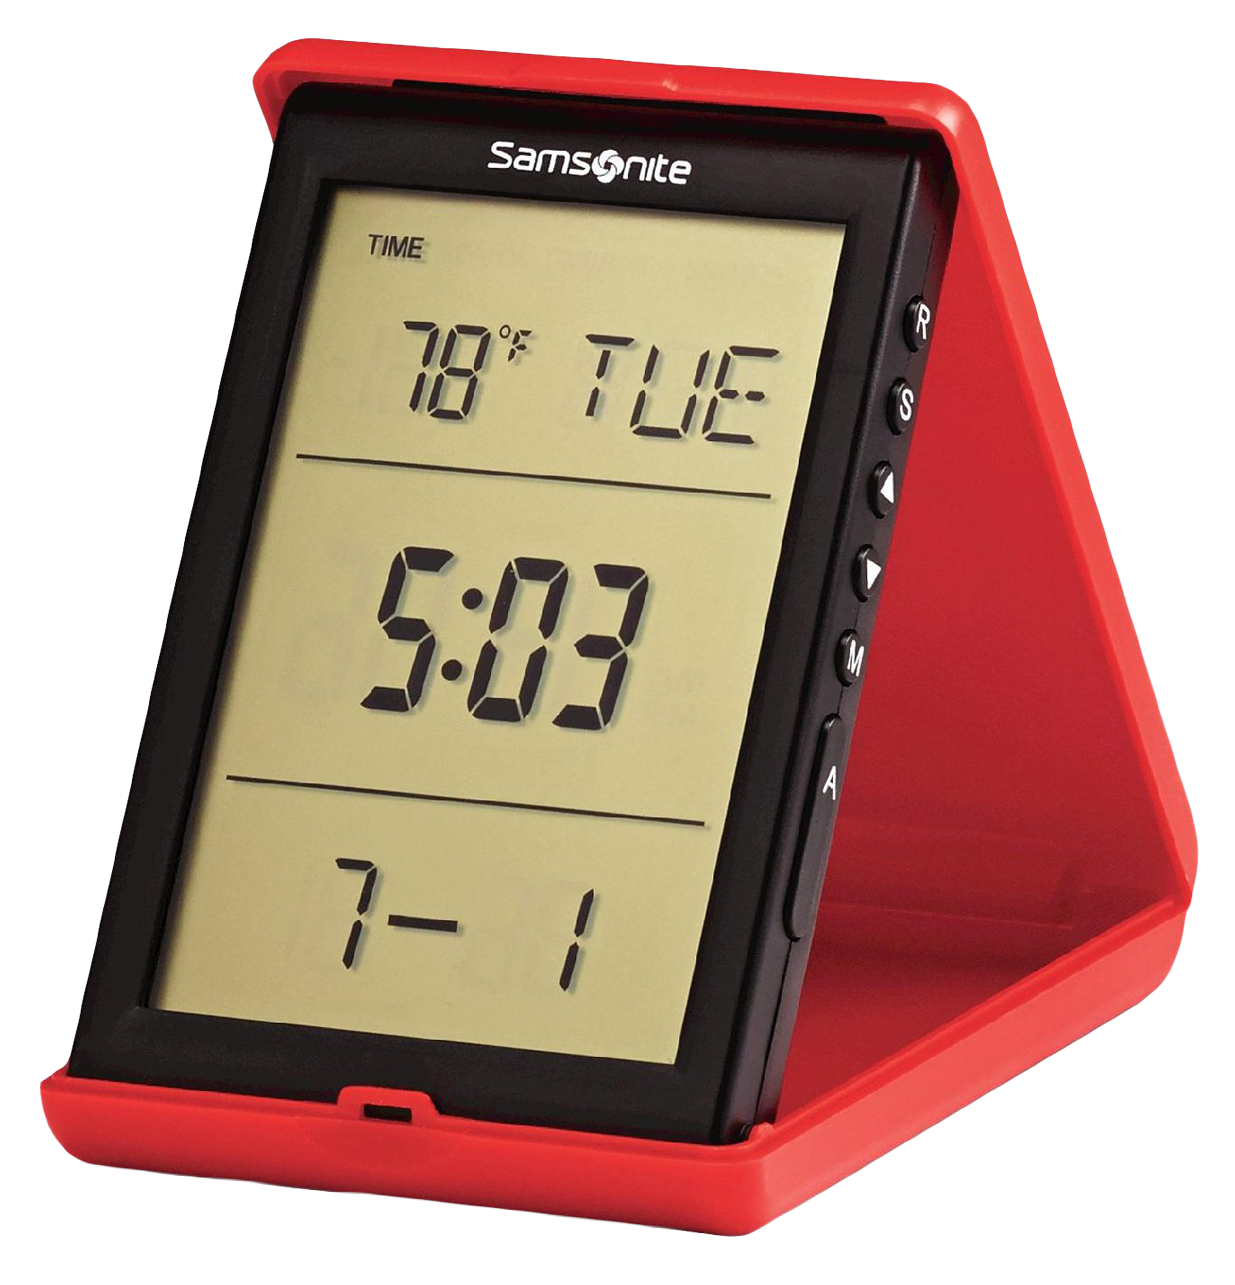 Digital Alarm Clock PNG Image